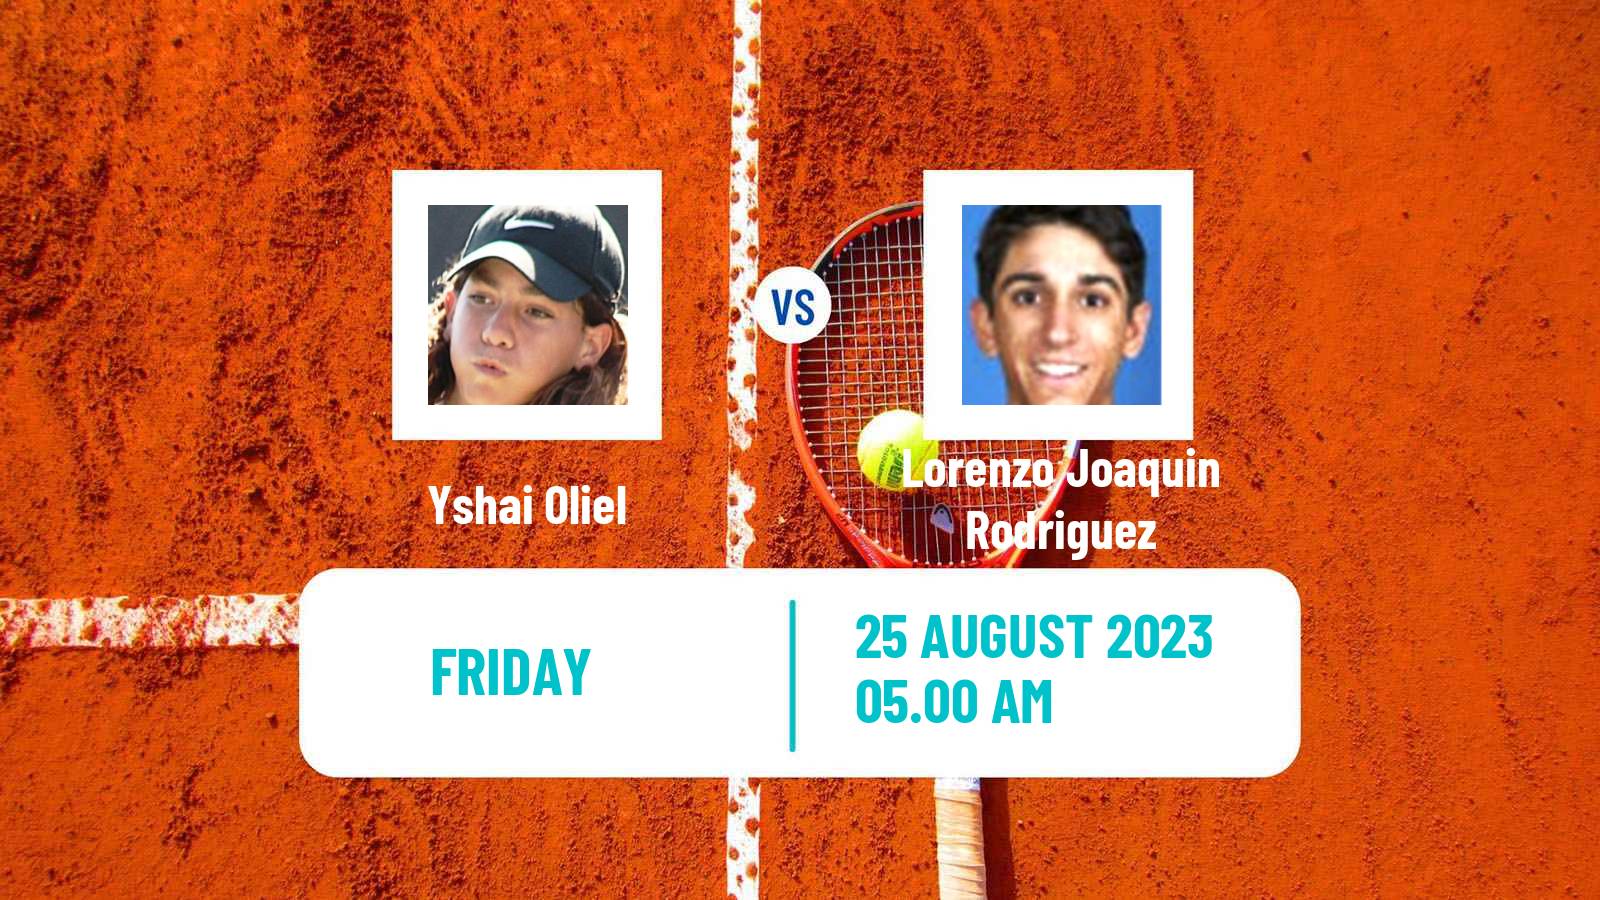 Tennis ITF M25 Poznan Men Yshai Oliel - Lorenzo Joaquin Rodriguez